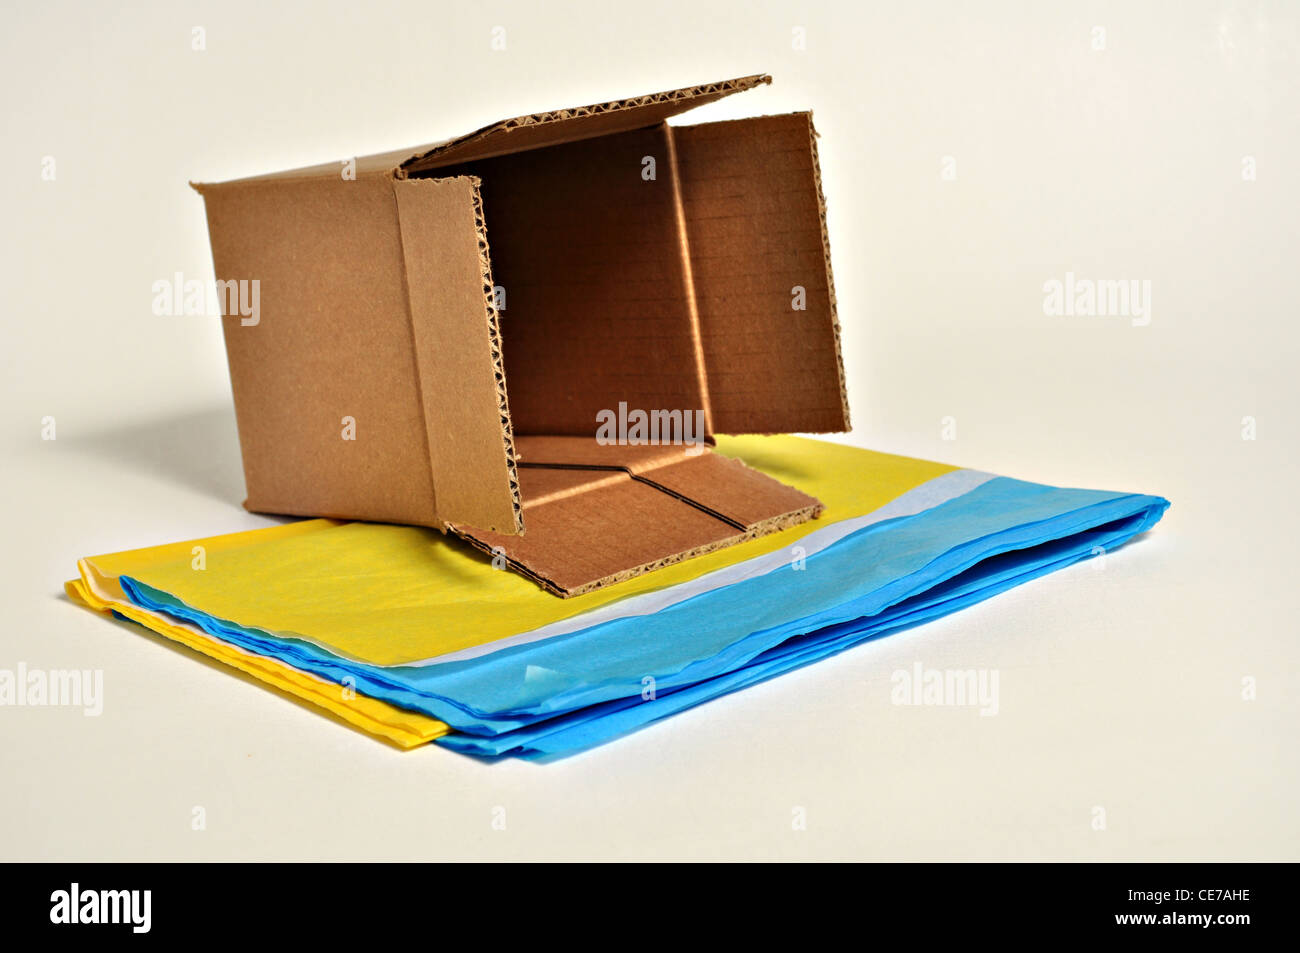 Une boîte en carton brun est situé au-dessus de papier de soie. Banque D'Images